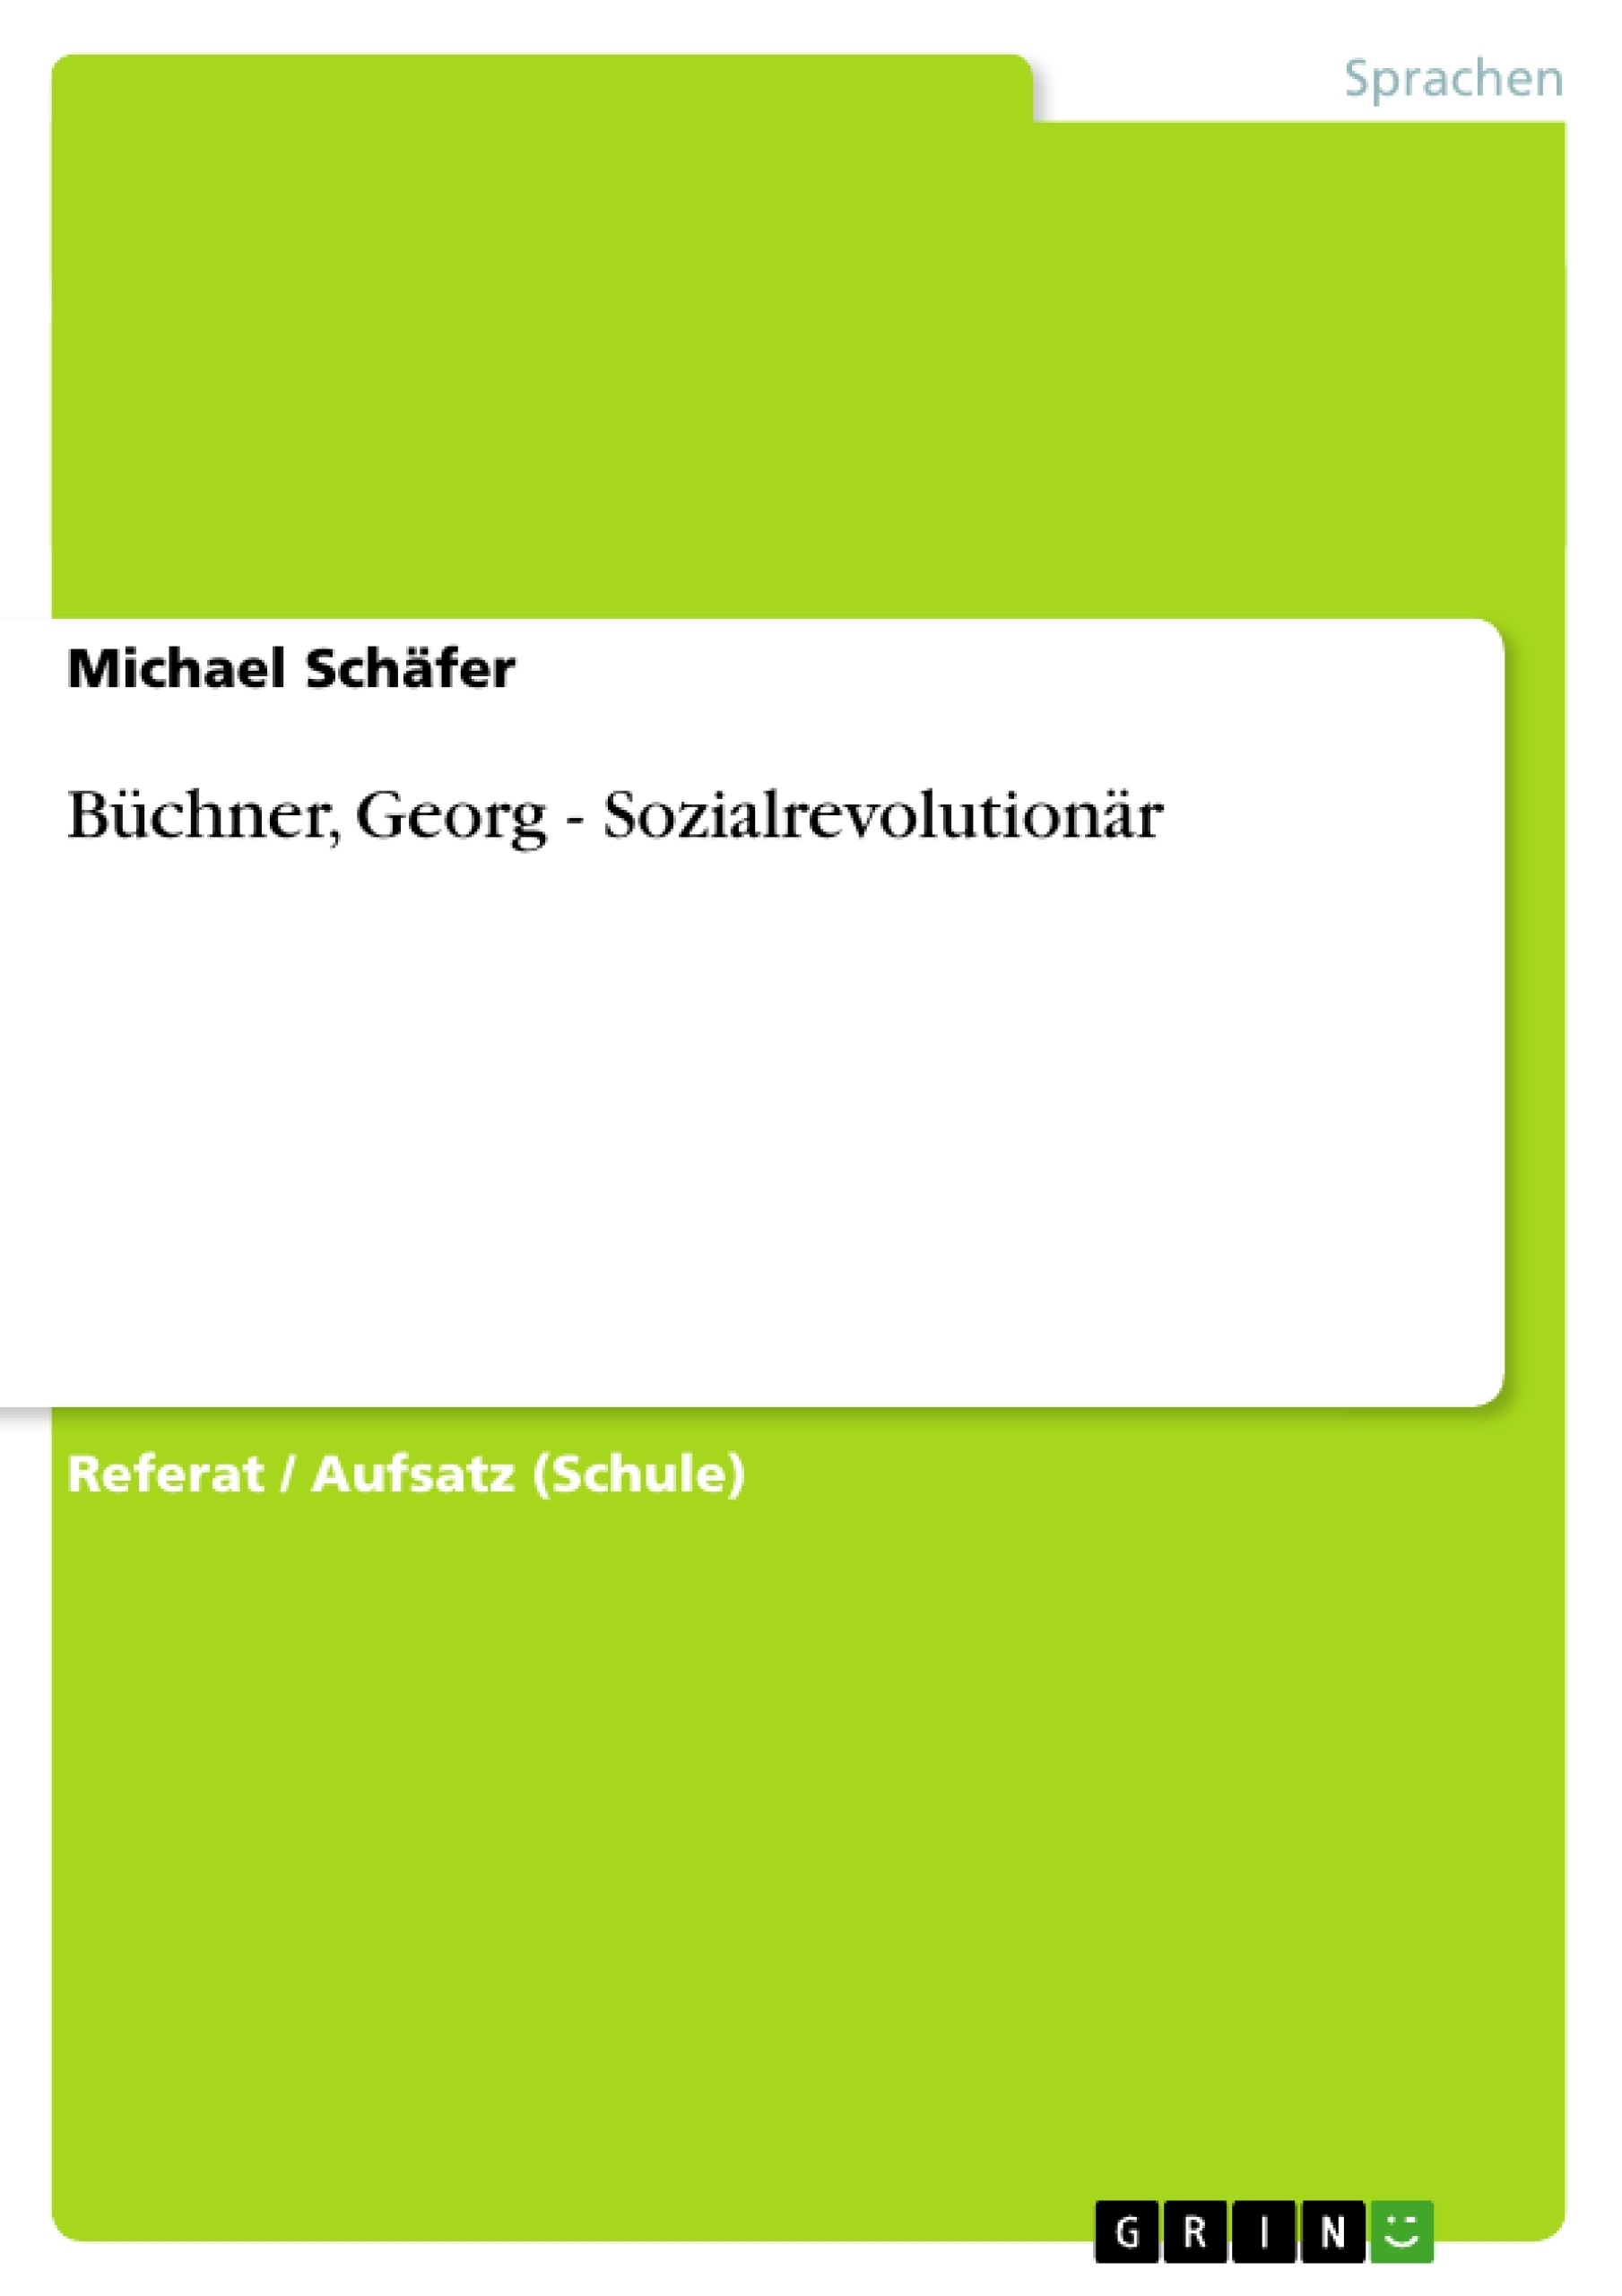 Título: Büchner, Georg - Sozialrevolutionär